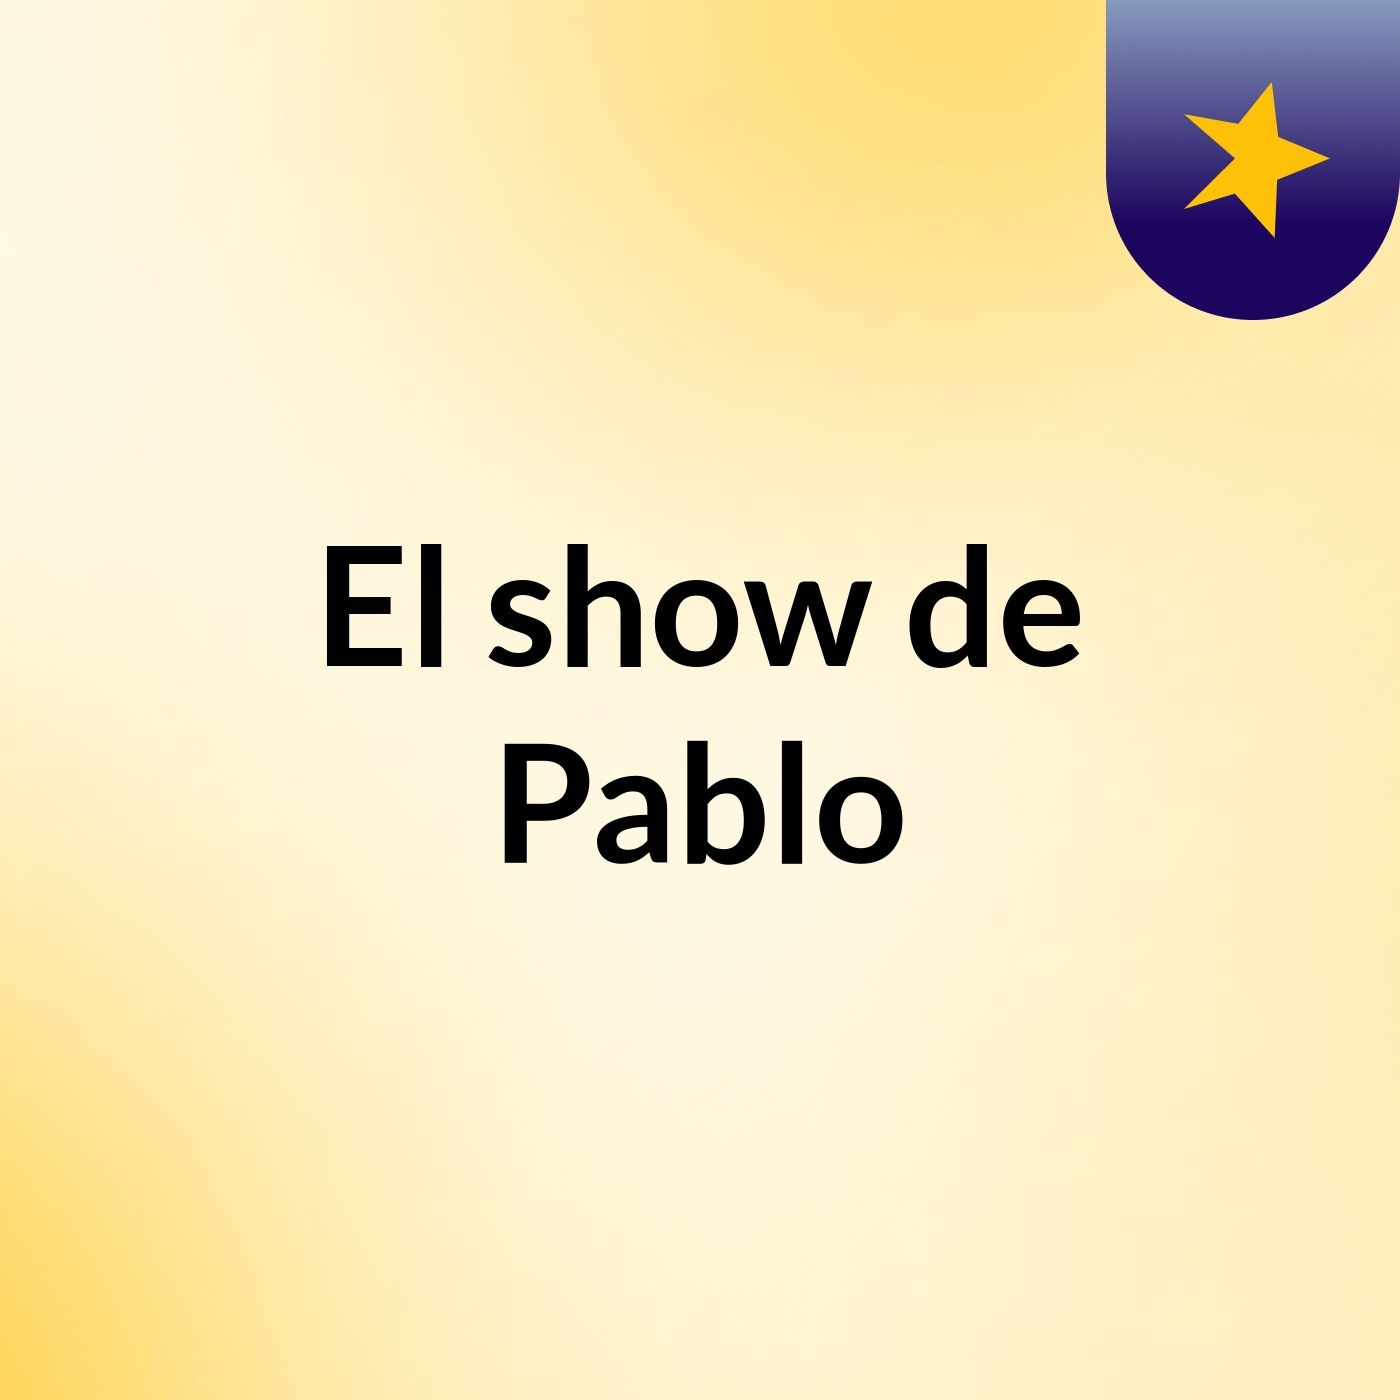 El show de Pablo